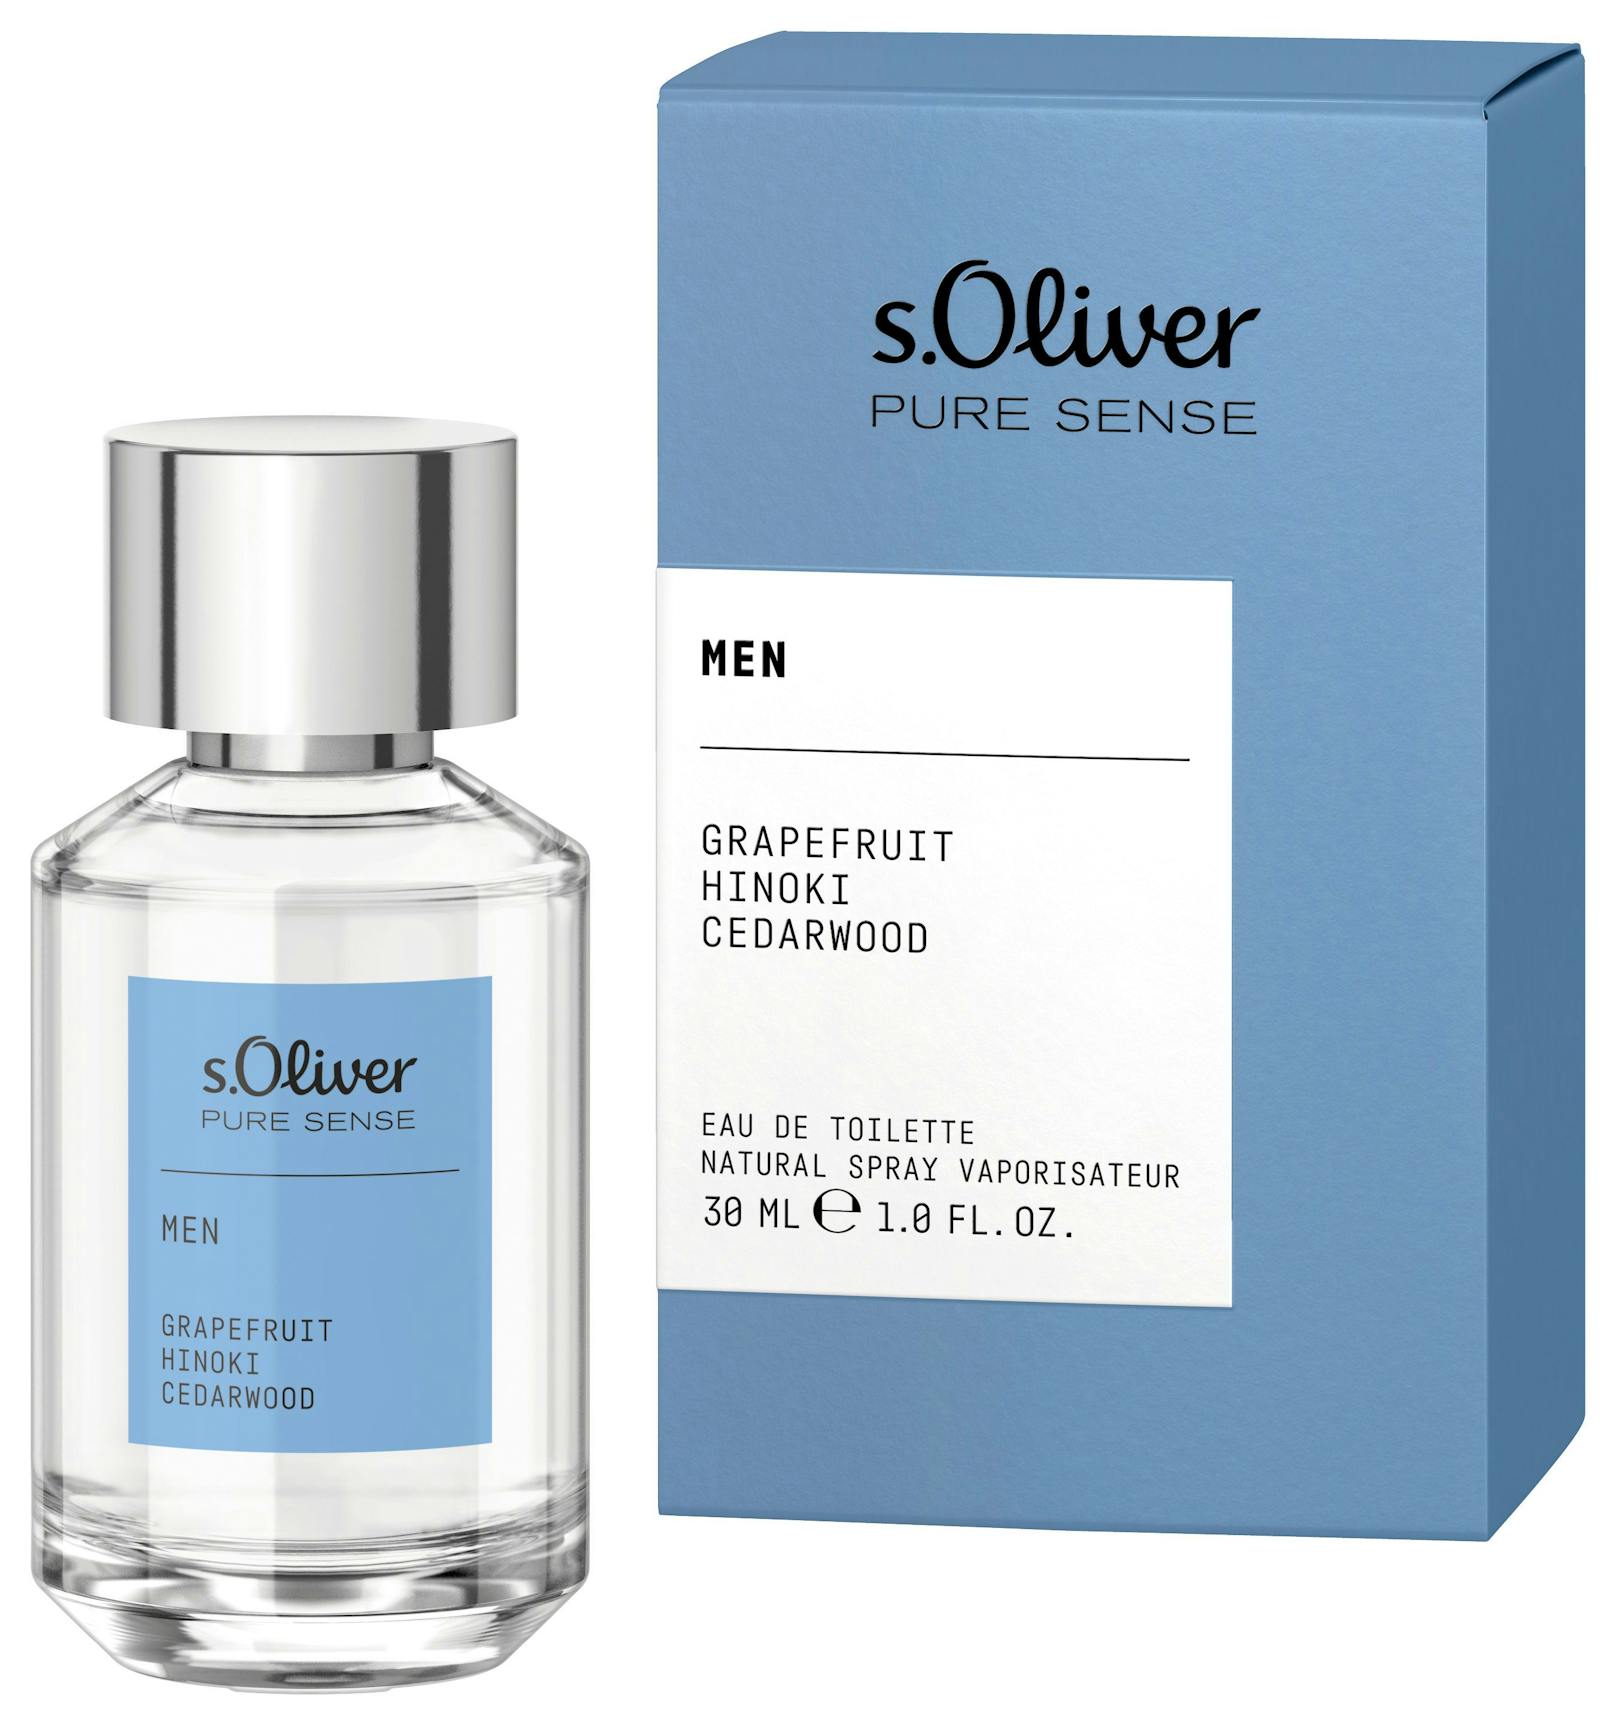 s.Oliver Pure Sense for Him: Ein natürlicher Duft, der Lebendigkeit und Maskulinität verkörpert!